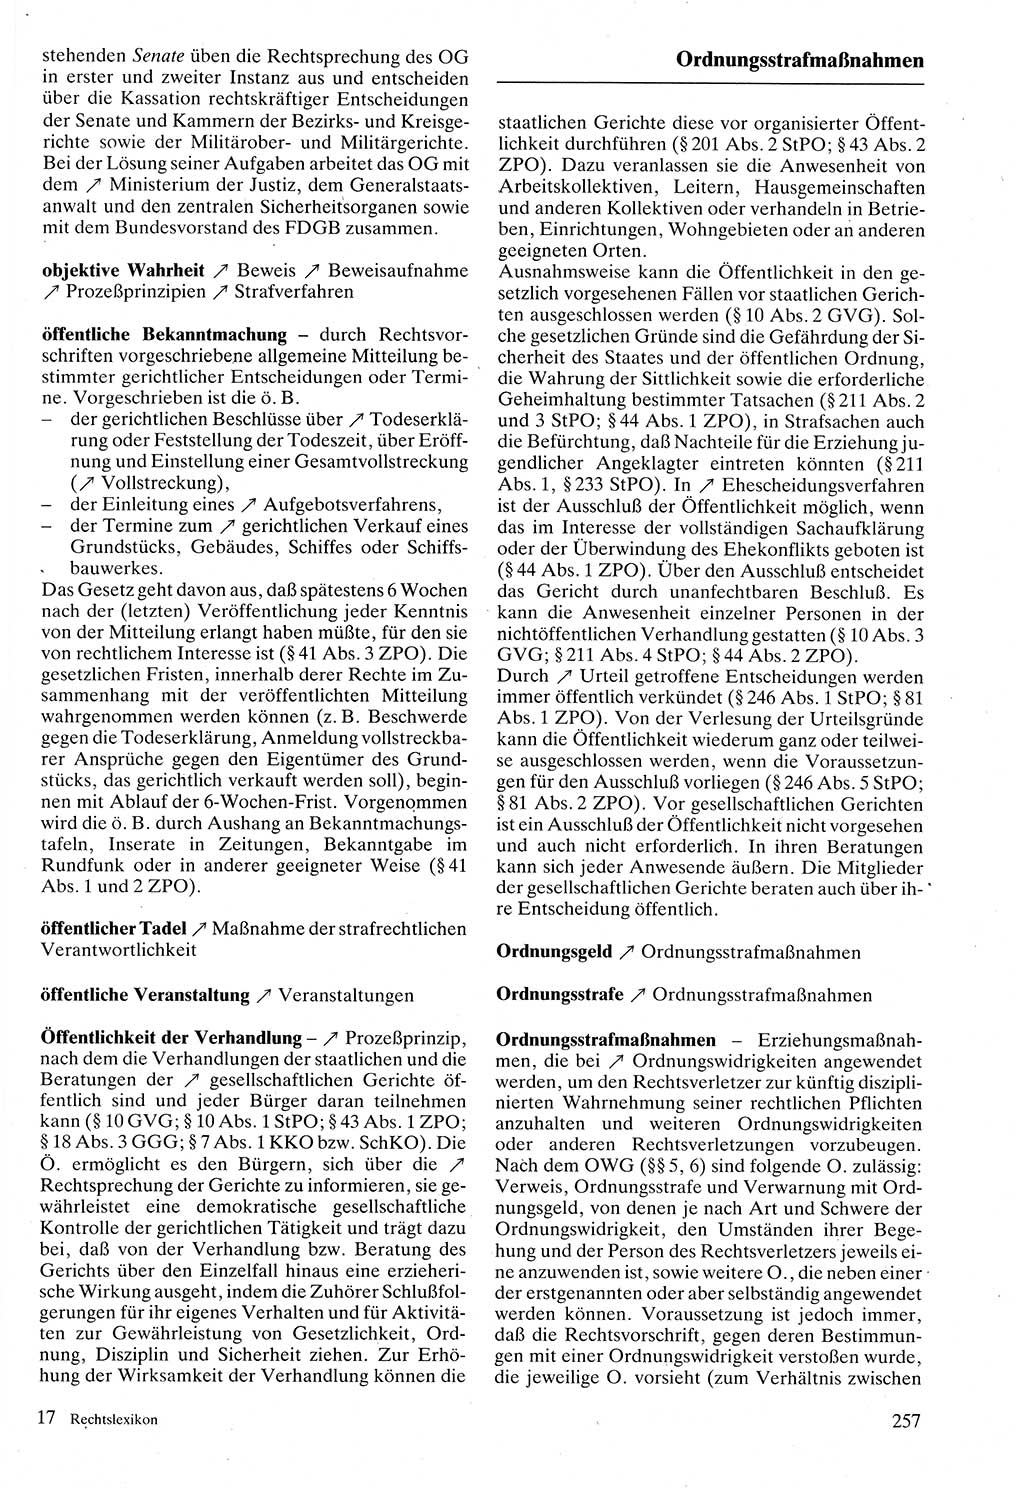 Rechtslexikon [Deutsche Demokratische Republik (DDR)] 1988, Seite 257 (Rechtslex. DDR 1988, S. 257)